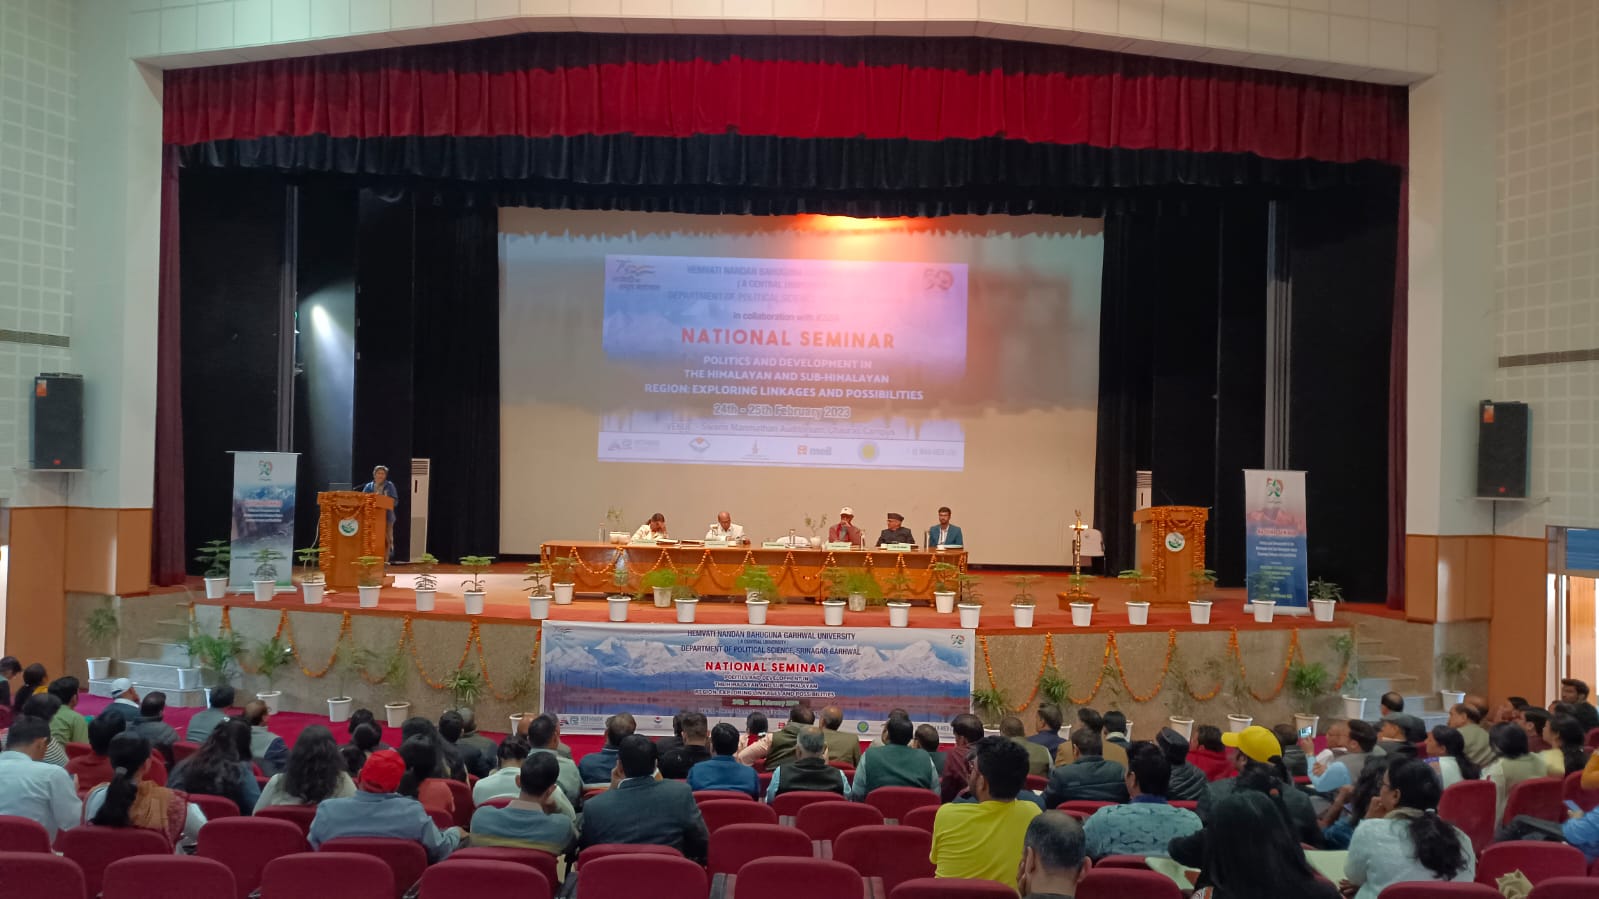 राजनीति विज्ञान विभाग के ओर से हिमालय और उप हिमालय क्षेत्रों में विकास और राजनीति : संबंधों और संभावनाओं की खोज विषय पर दो दिवसीय राष्ट्रीय सेमिनार का शुभारंभ